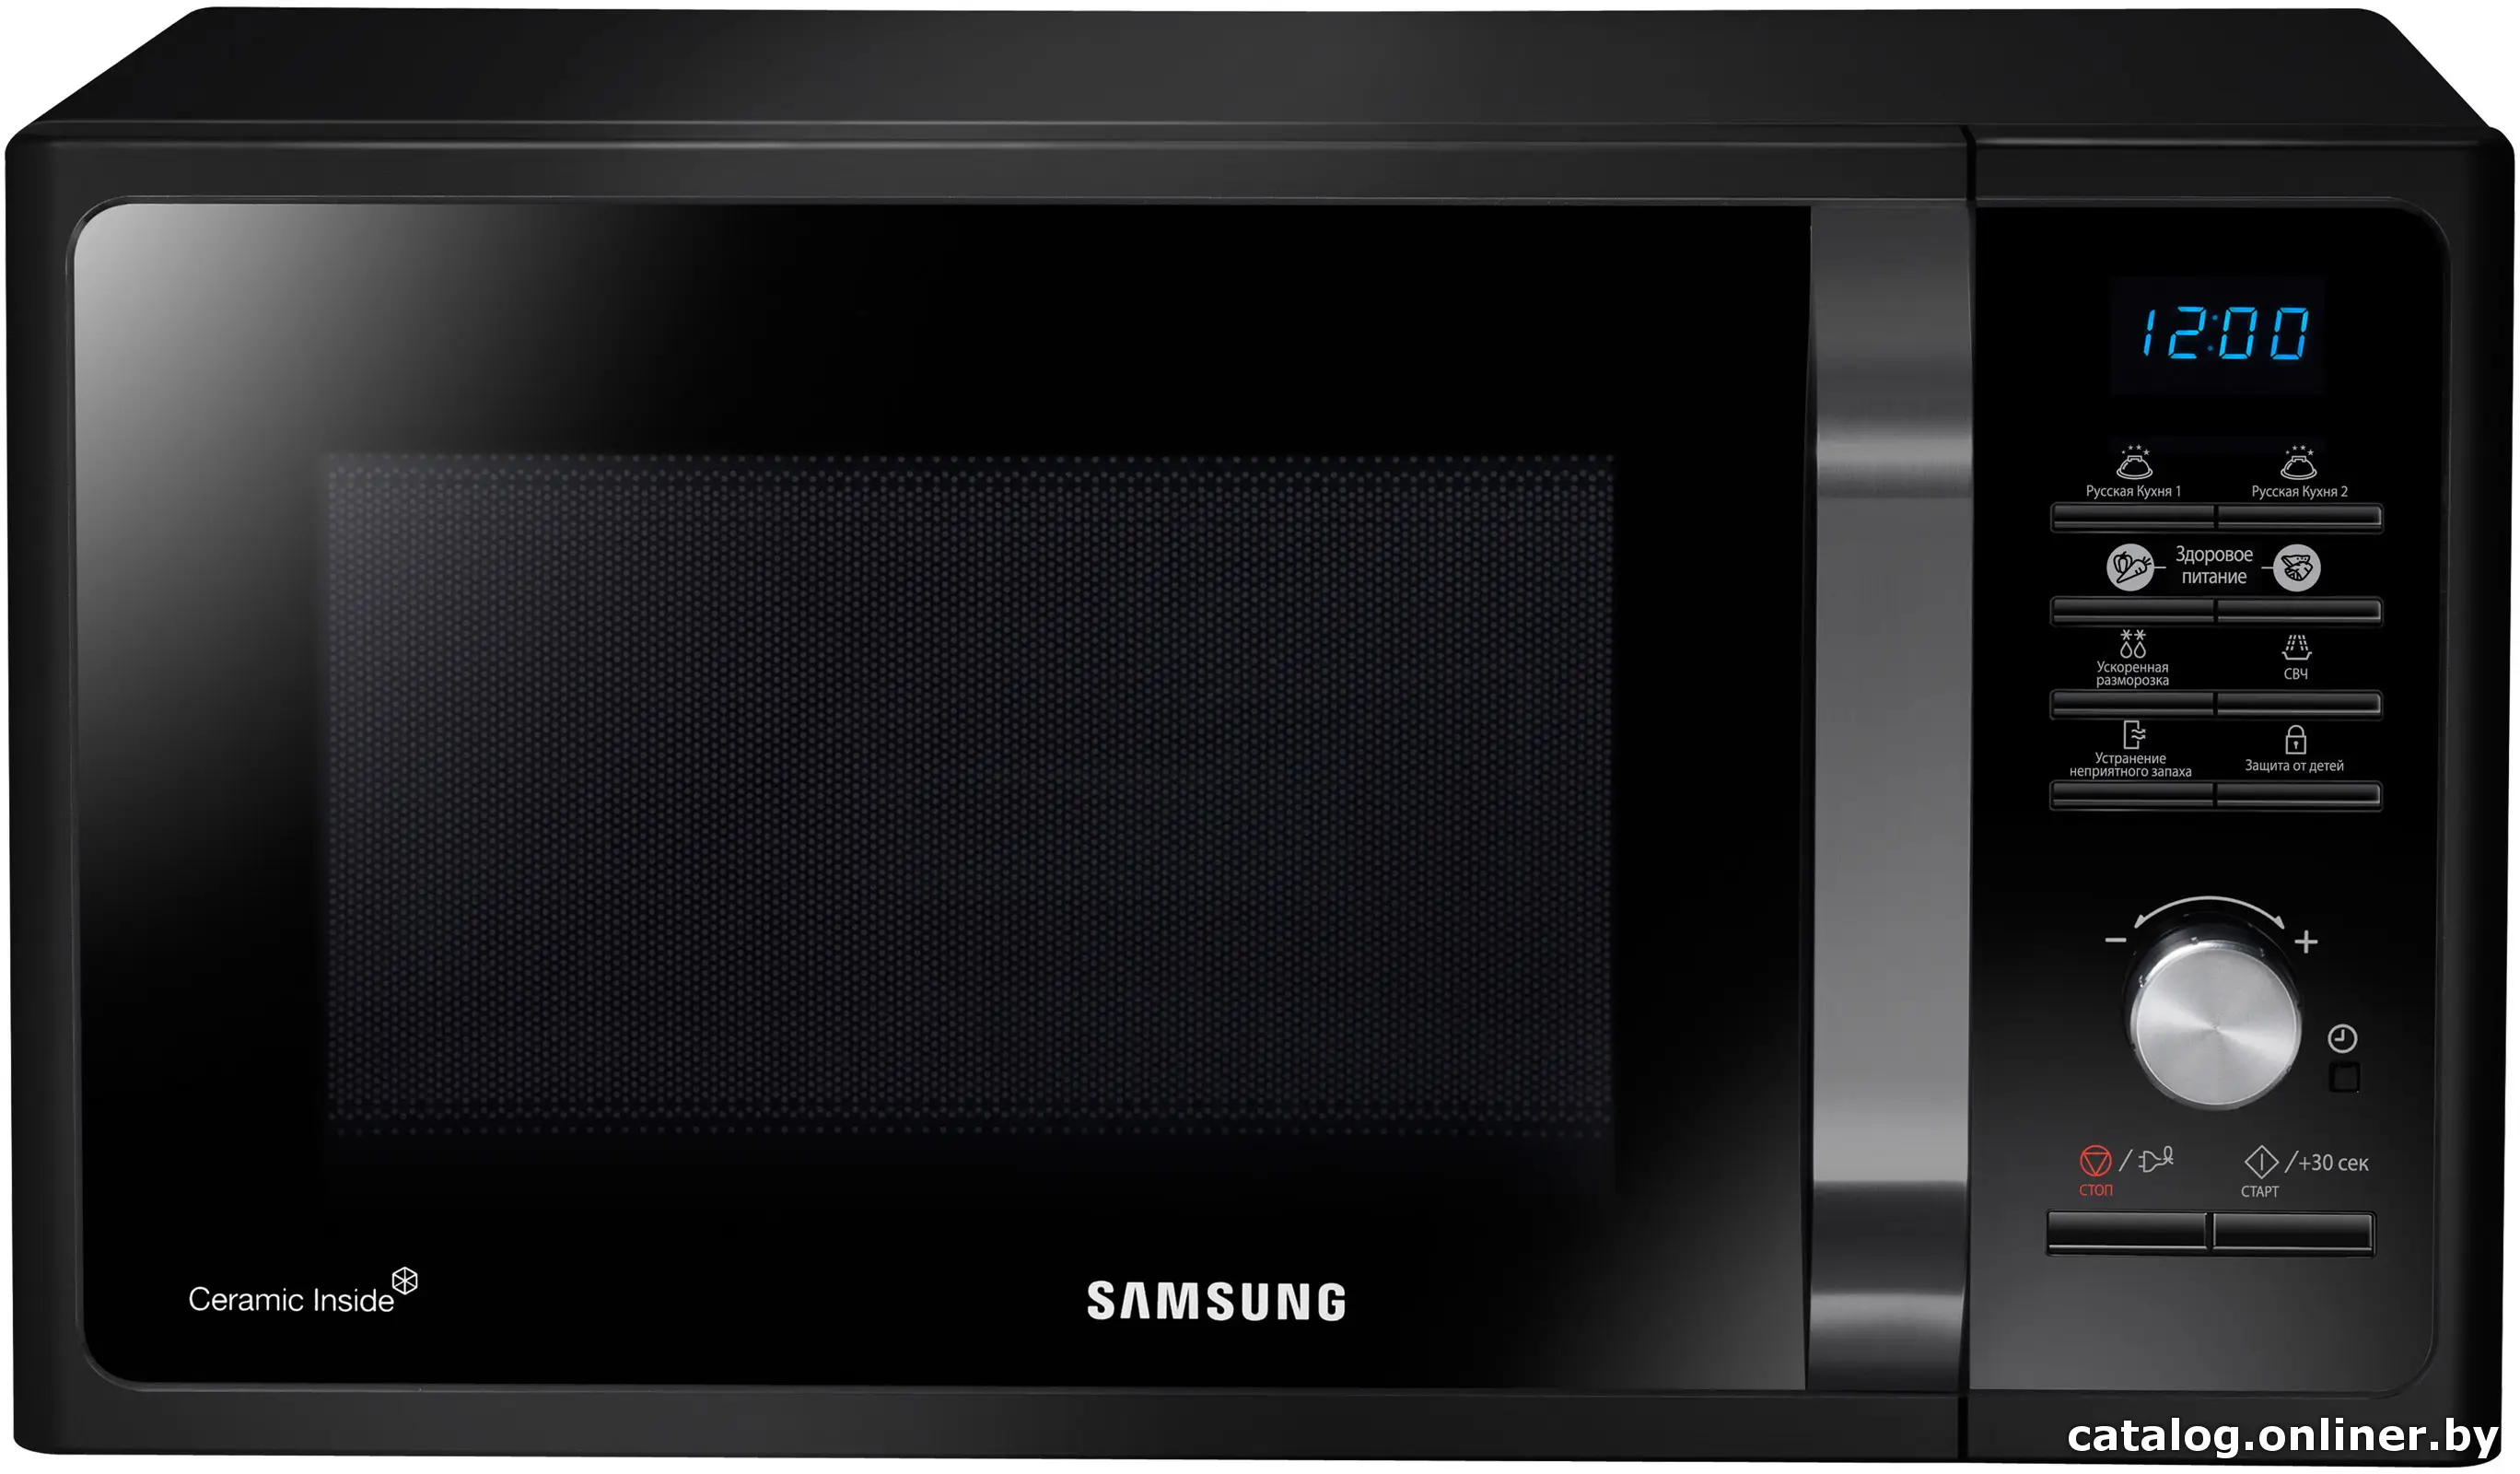 Купить Микроволновая печь Samsung MS23F302TAK черный, цена, опт и розница